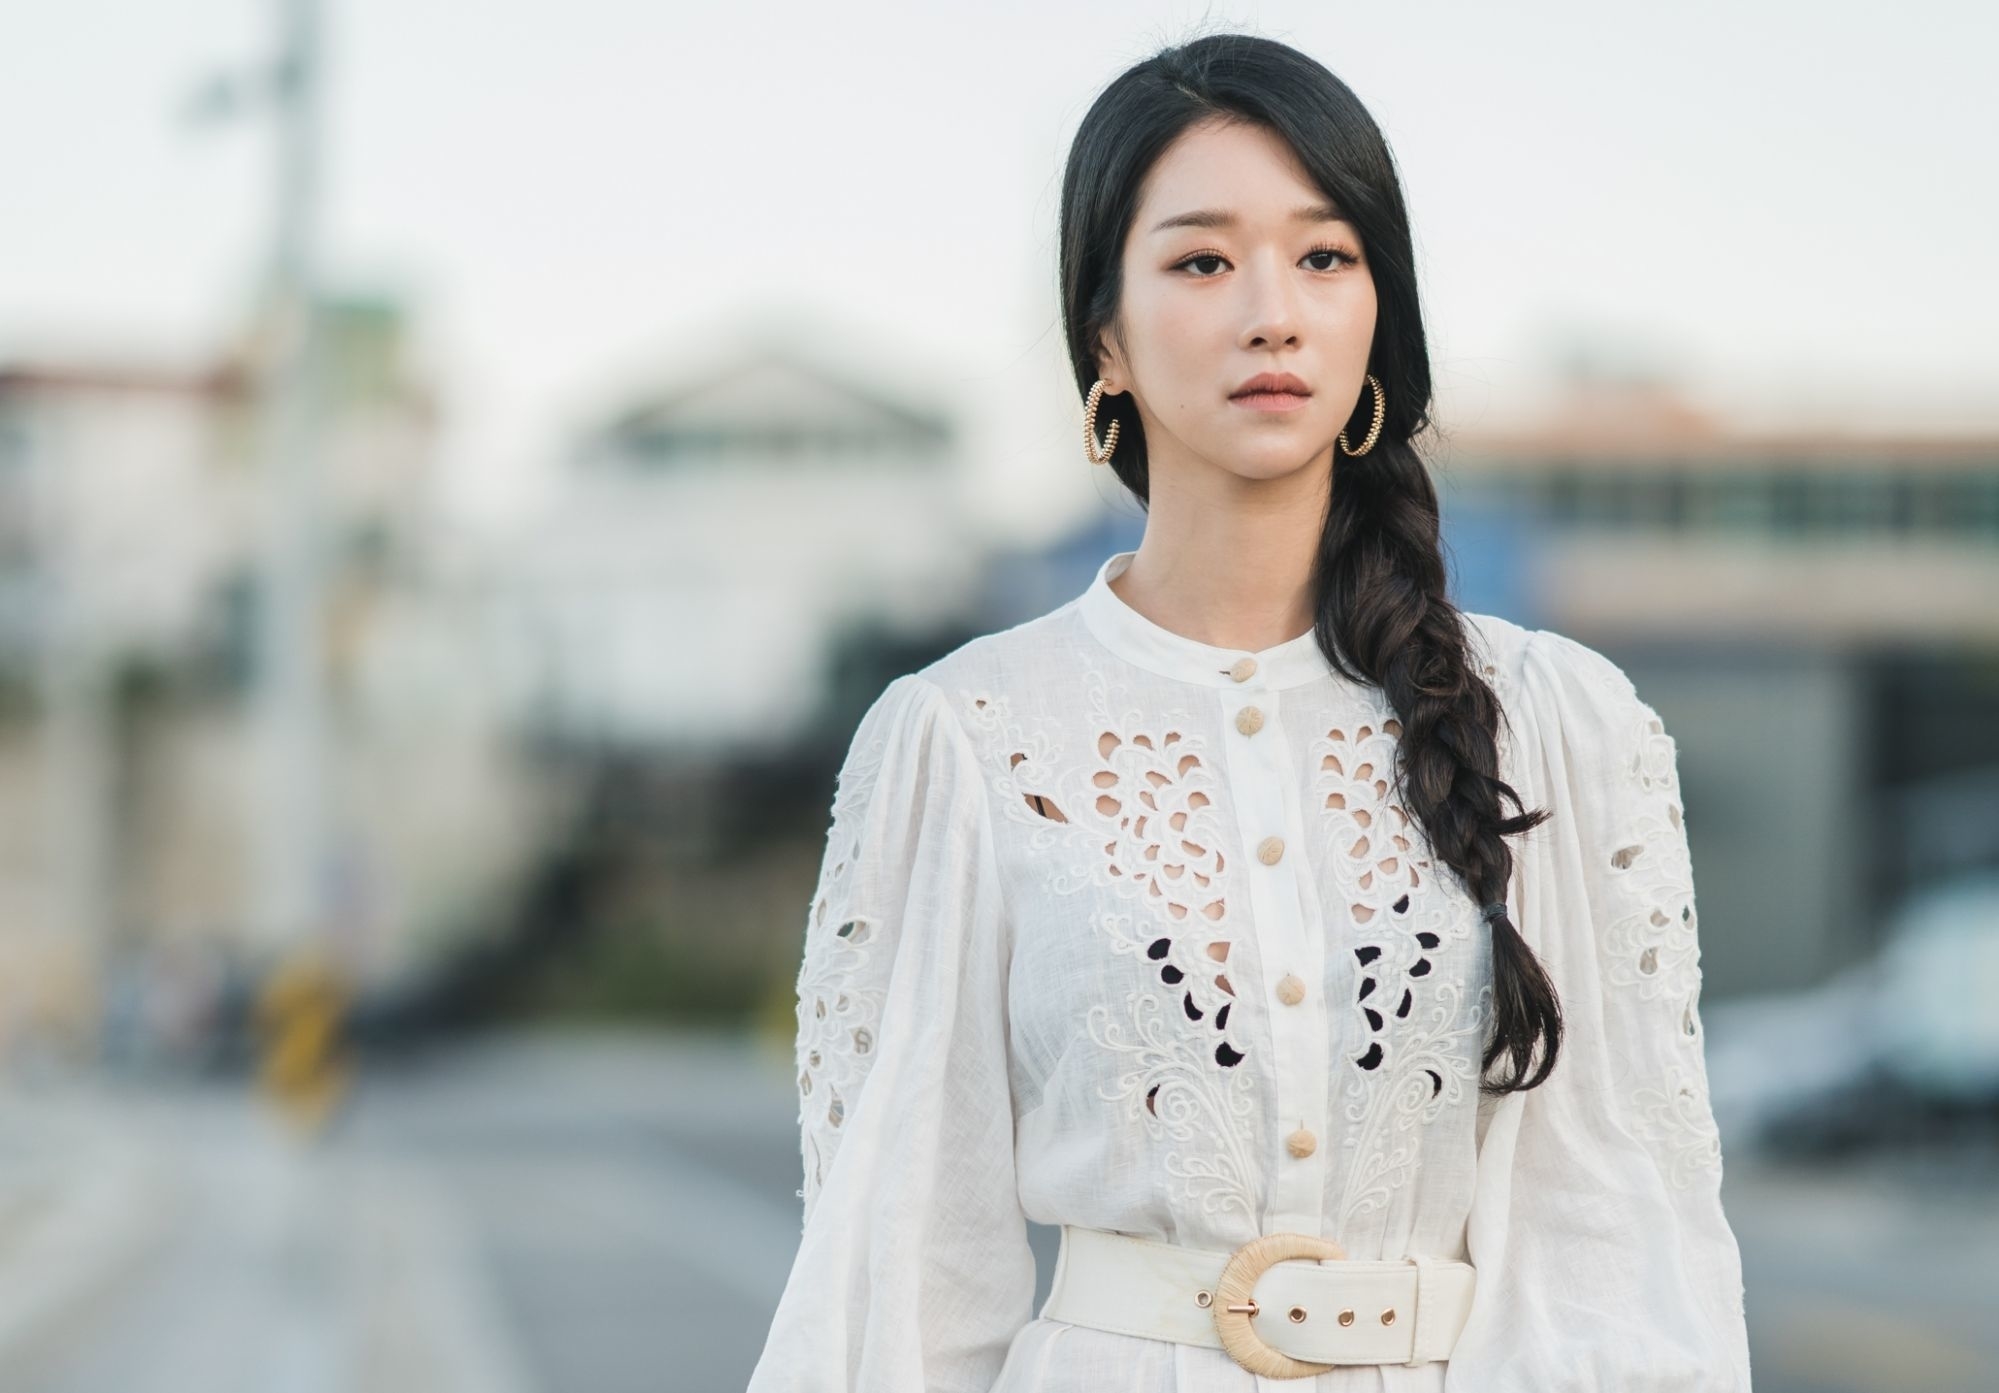 Ko Mun-Yeon, personaje principal de Está bien no estar bien usando un vestido blanco con detalles recortados y un cinturón, de fondo una calle borrosa.